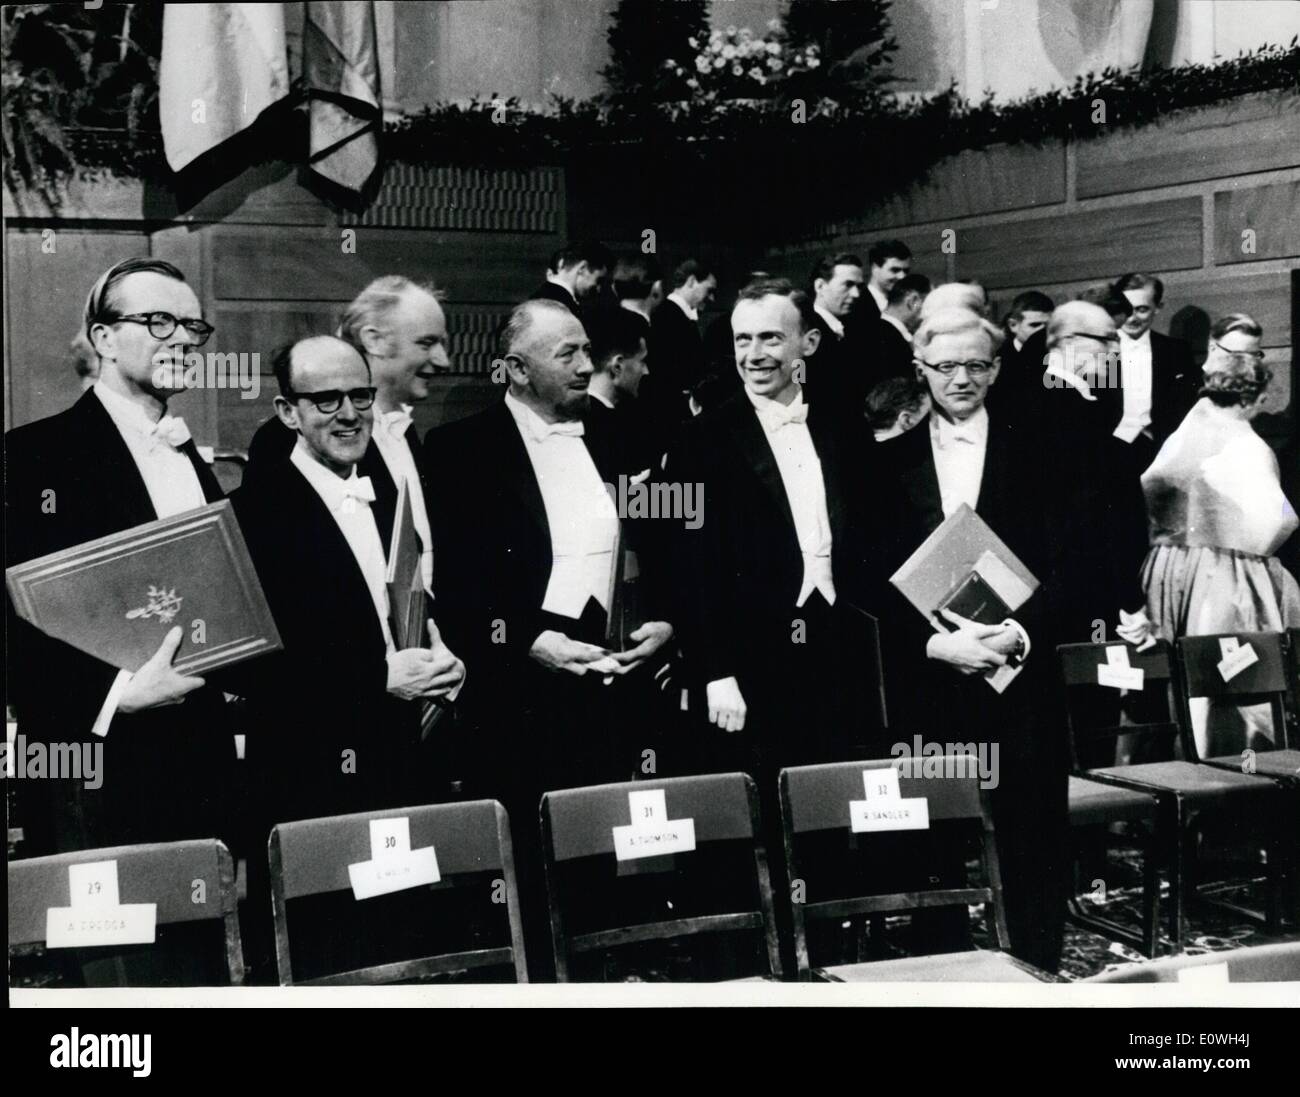 Il 12 Dic. 1962 - I vincitori del Nobel 1962.: visto durante la cerimonia di presentazione presso la Borsa di Stoccolma-exchange sono alcuni dei vincitori del premio. La foto mostra da sinistra a destra essi sono il professor Maurice Wilkins, il dott. Max Perutz, Dr Francis Crick, John Steinbeck, Prodessor James Watson e Dr John C Kendrew. Foto Stock